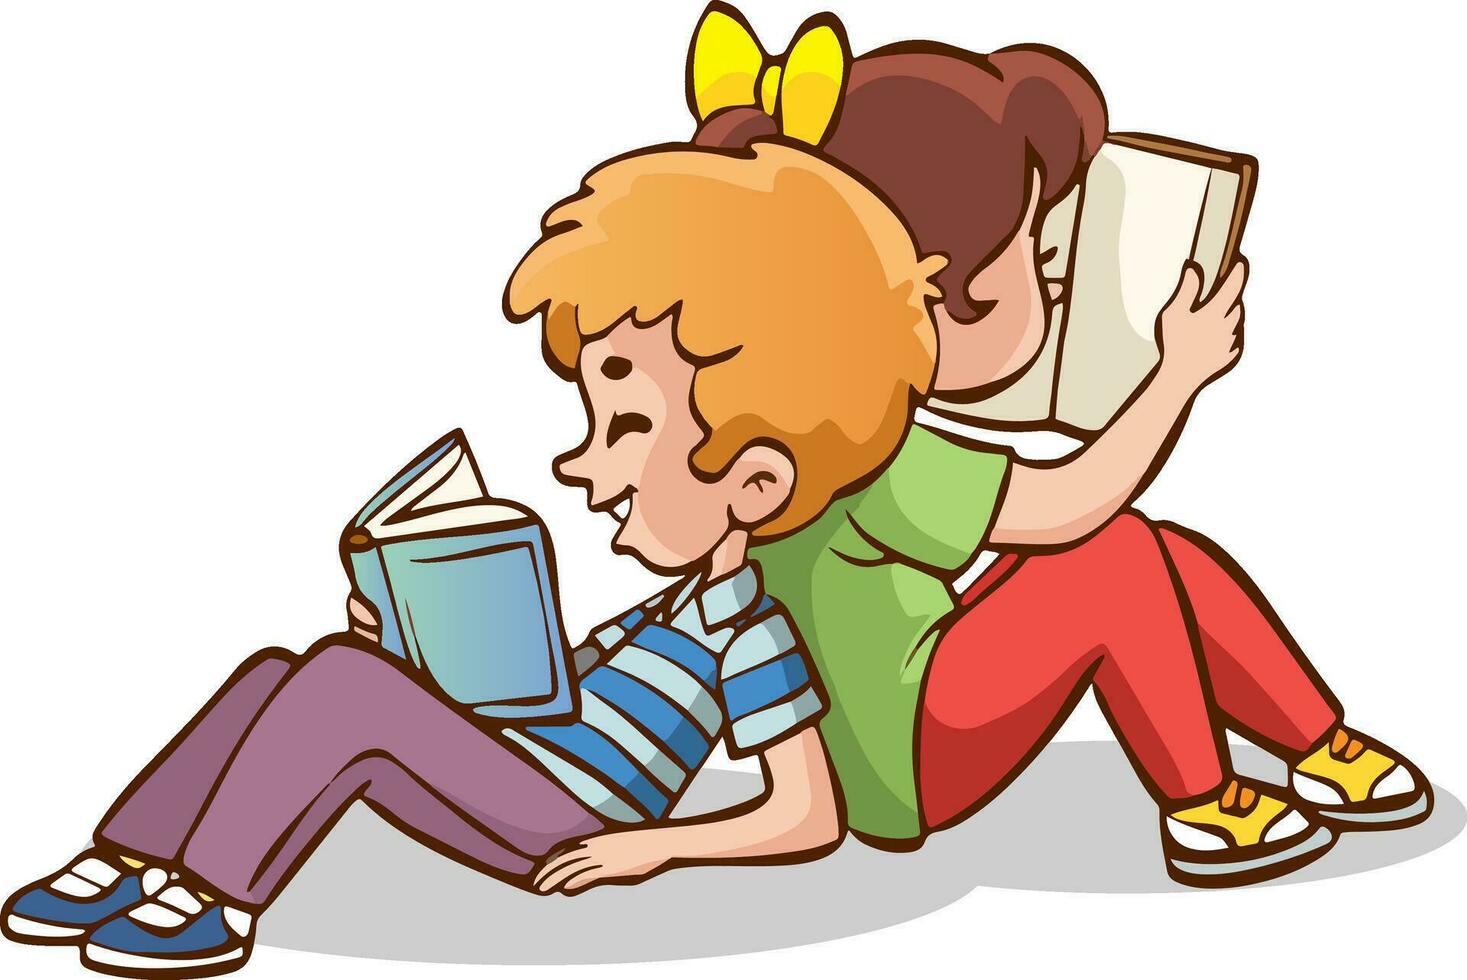 linda pequeño chico y niña sentado leyendo libro en piso para aprendiendo. inteligente niño. infancia contento sonrisa cuando leyendo libro de texto. personaje dibujos animados niño vector ilustración para educación y estudiar.